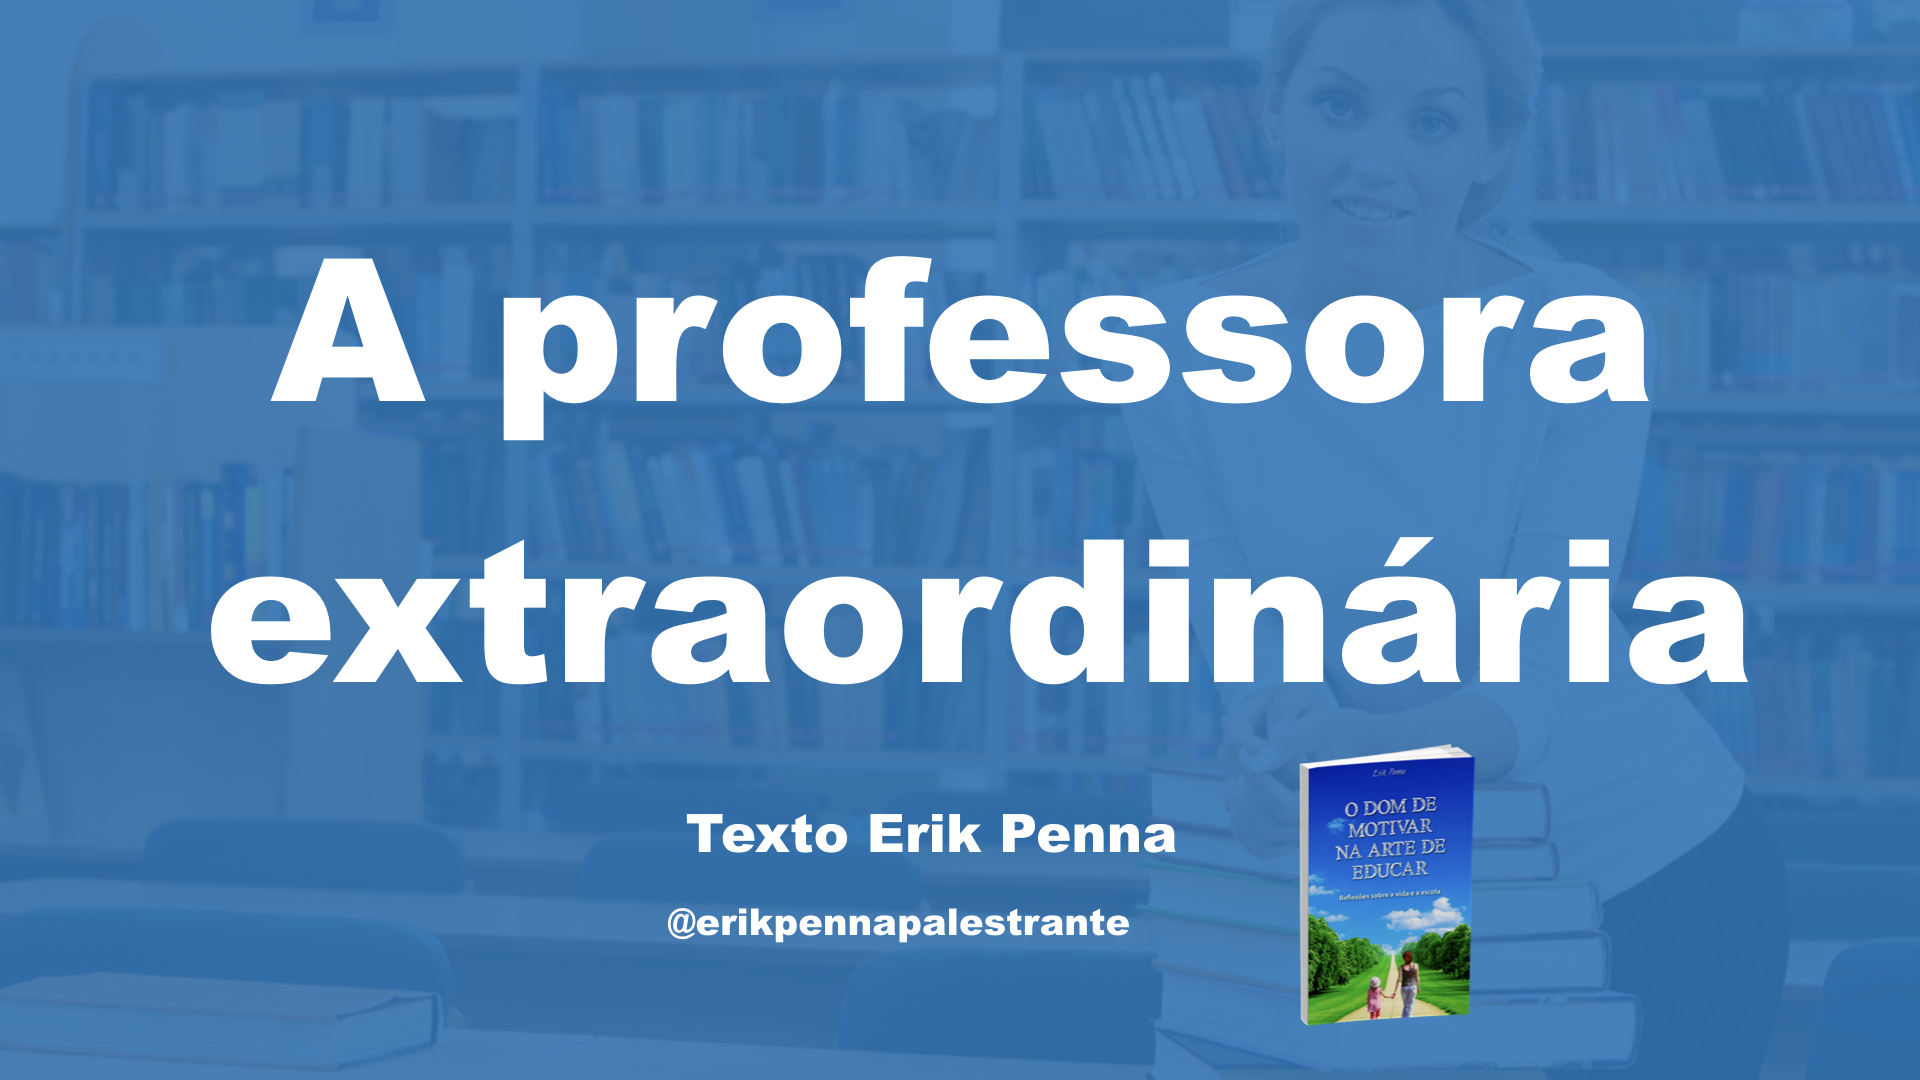 Erik Penna é No 1 como Palestrante de Motivação e narra a história de uma professora extraordinária.